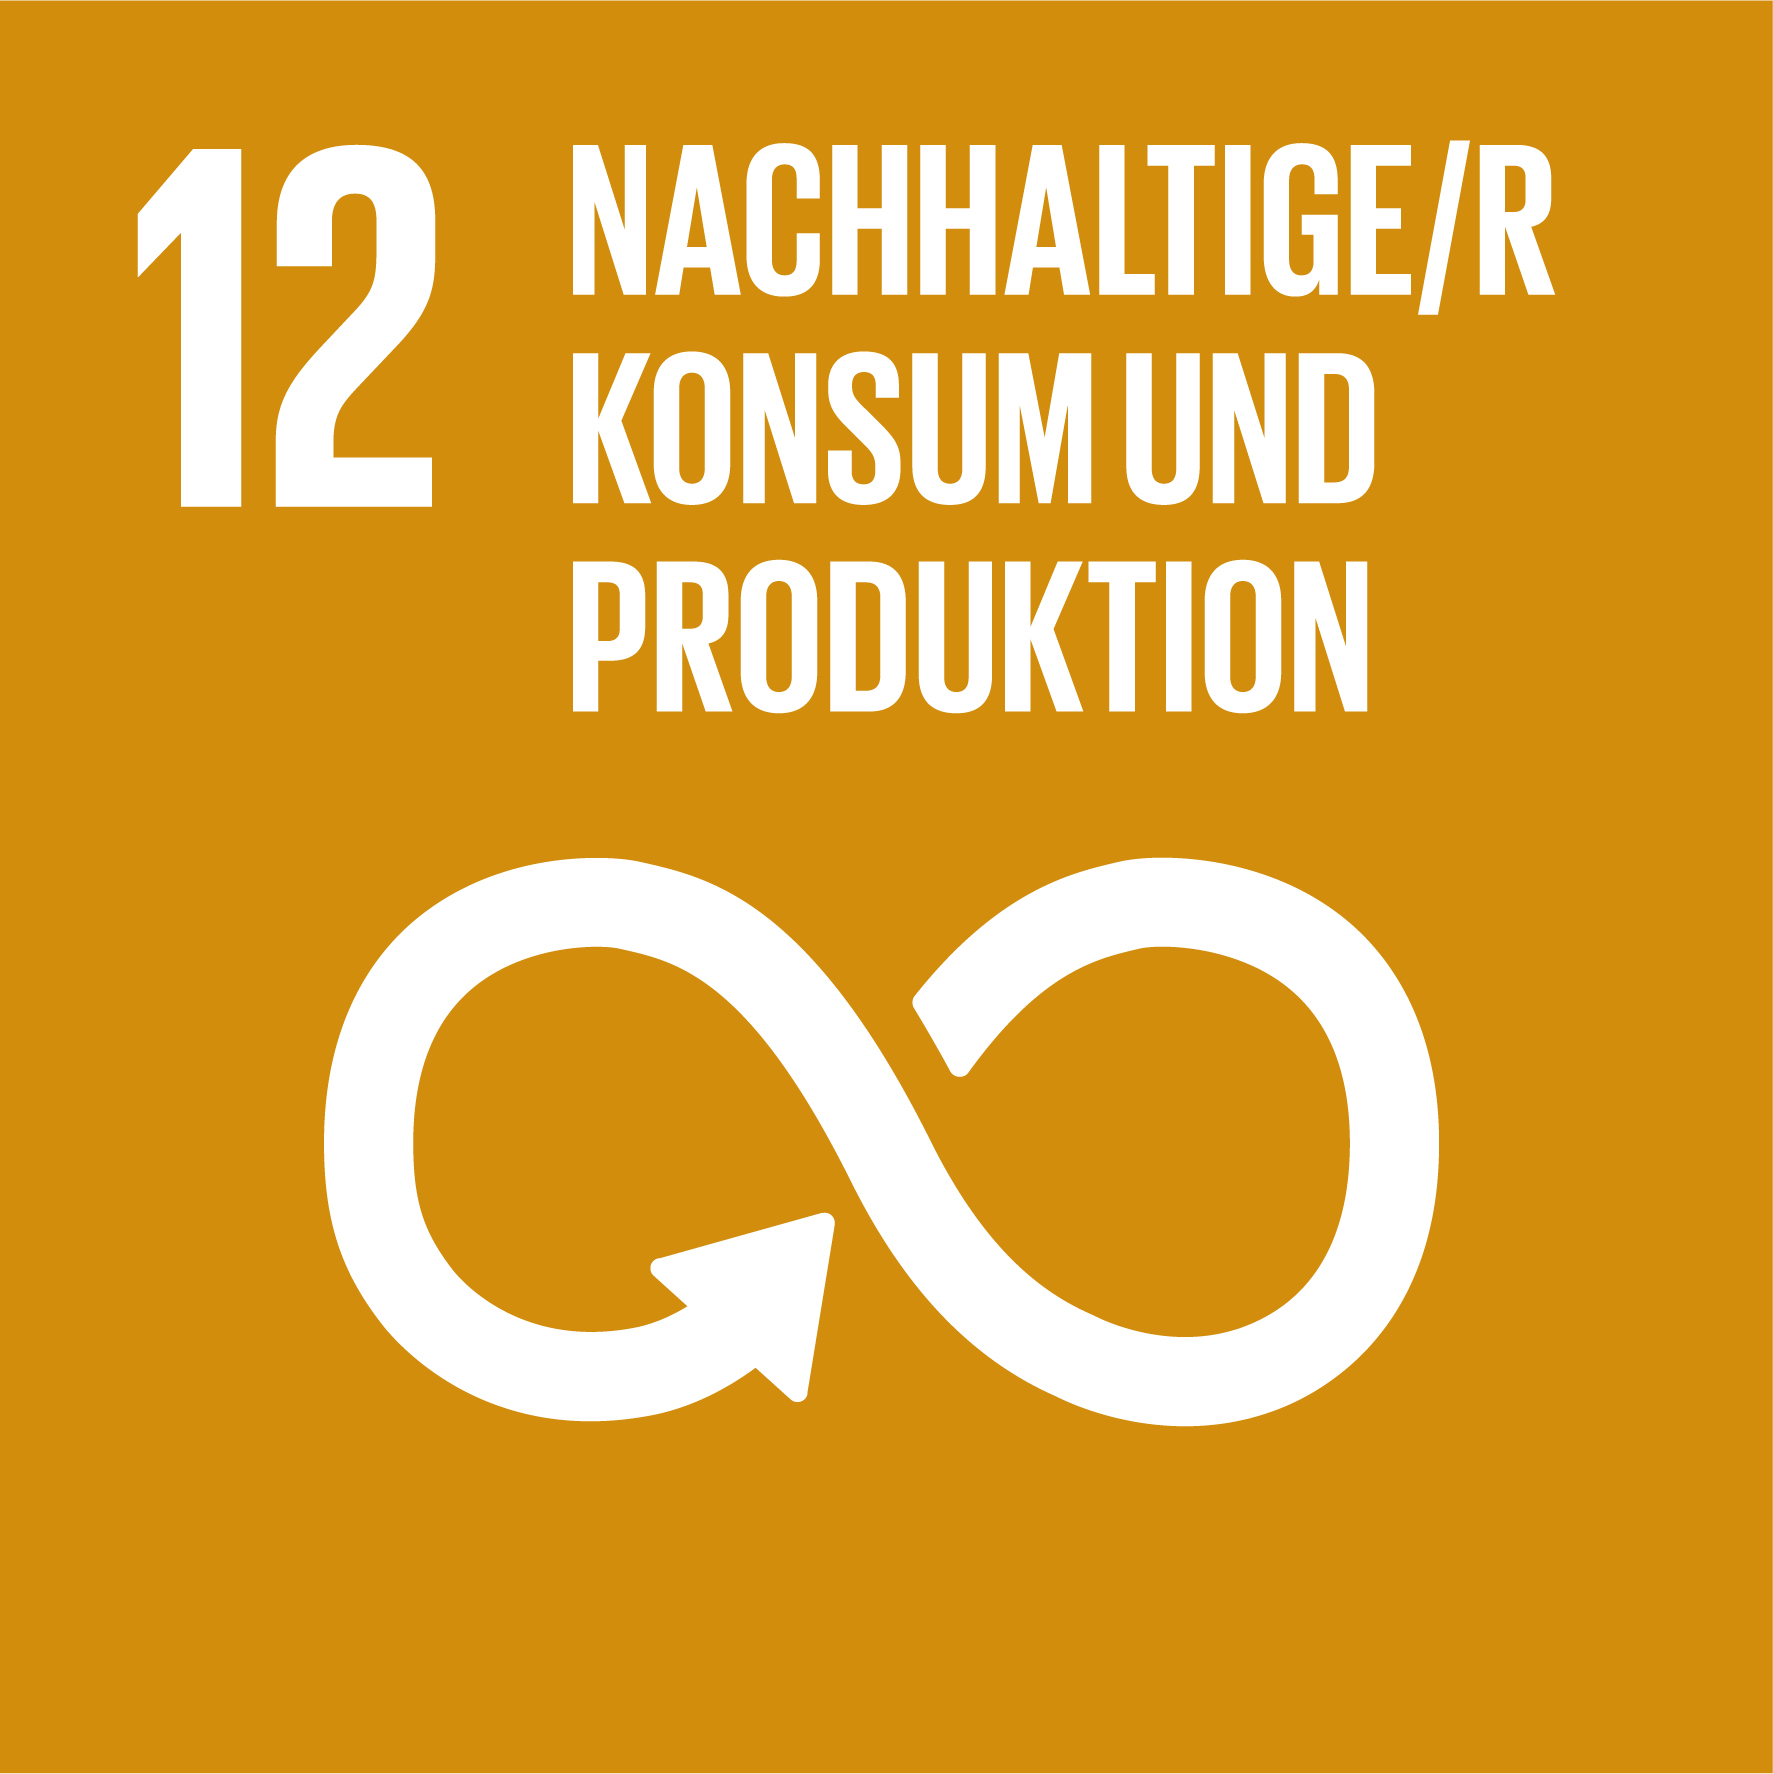 Schaubild von Ziel Nummer 12 der Nachhaltigkeit „Nachhaltige/r Konsum und Produktion"